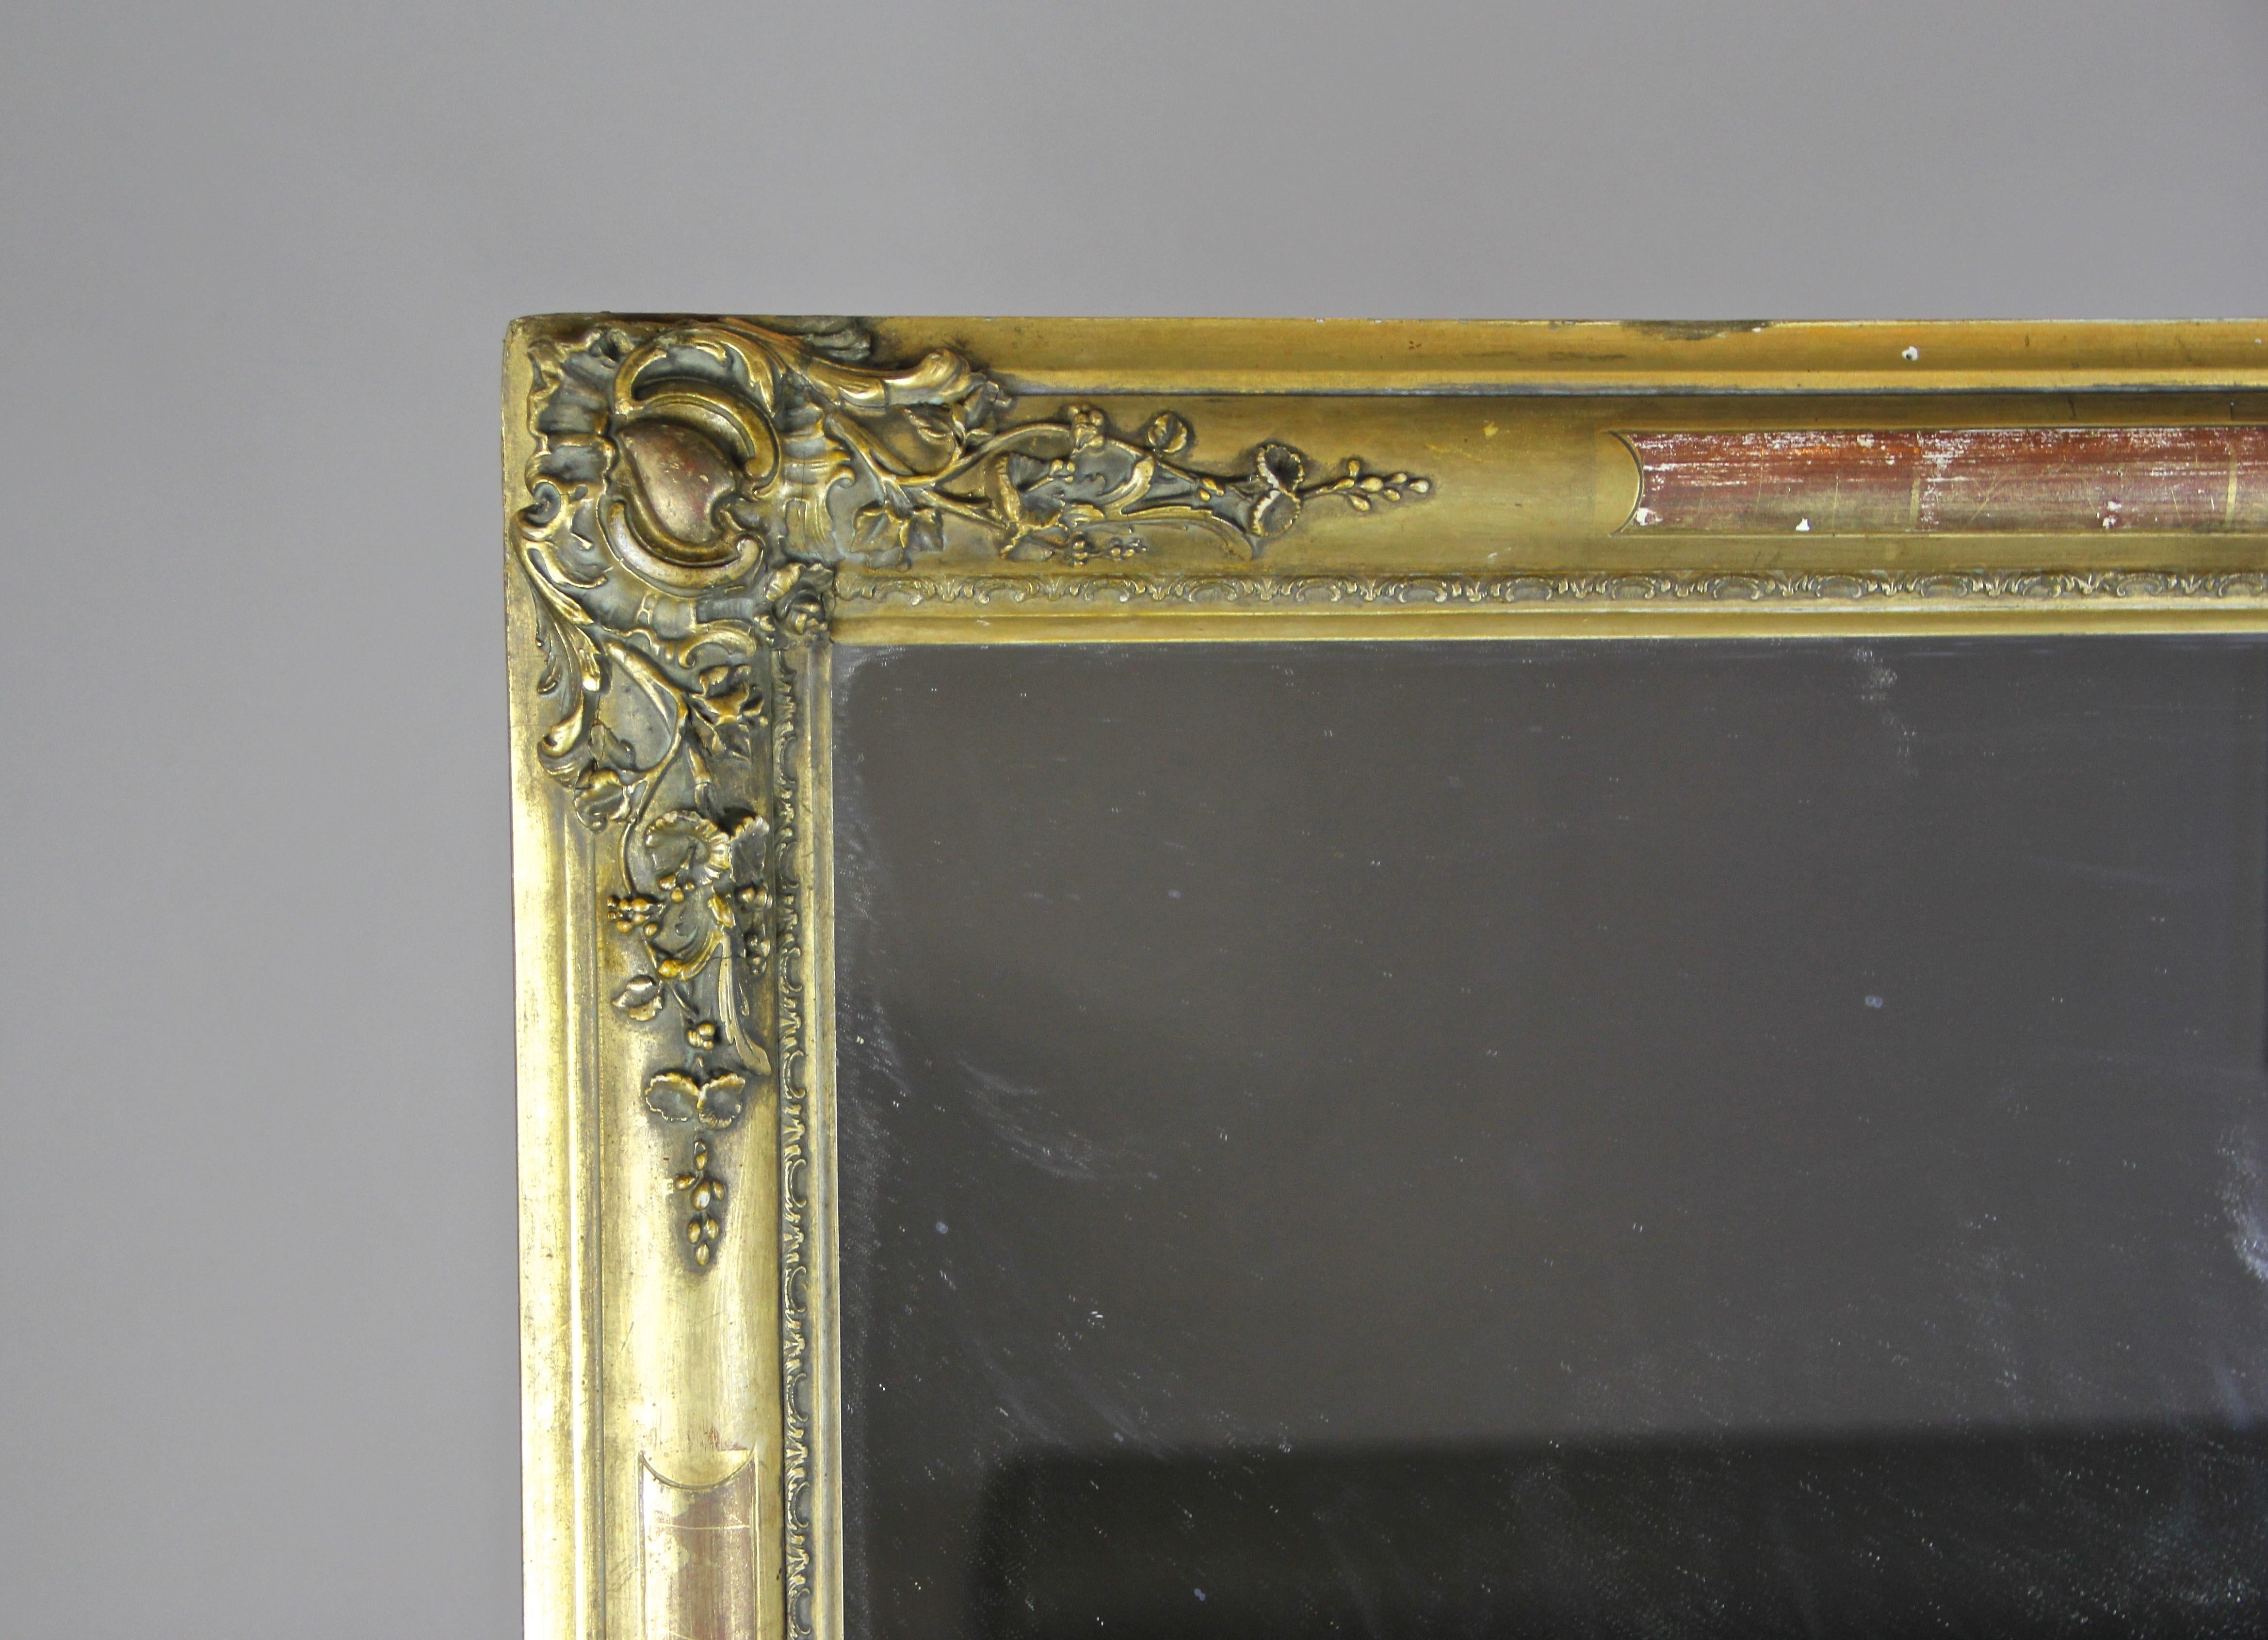 Aus Frankreich um 1820 stammt dieser fantastische vergoldete Biedermeier-Spiegel. Dieser atemberaubende Goldrahmen zeigt verschiedene Vergoldungstechniken wie Kompositionsgold und Blattgold. Wunderschöne florale Stuckarbeiten in jeder Ecke, verziert